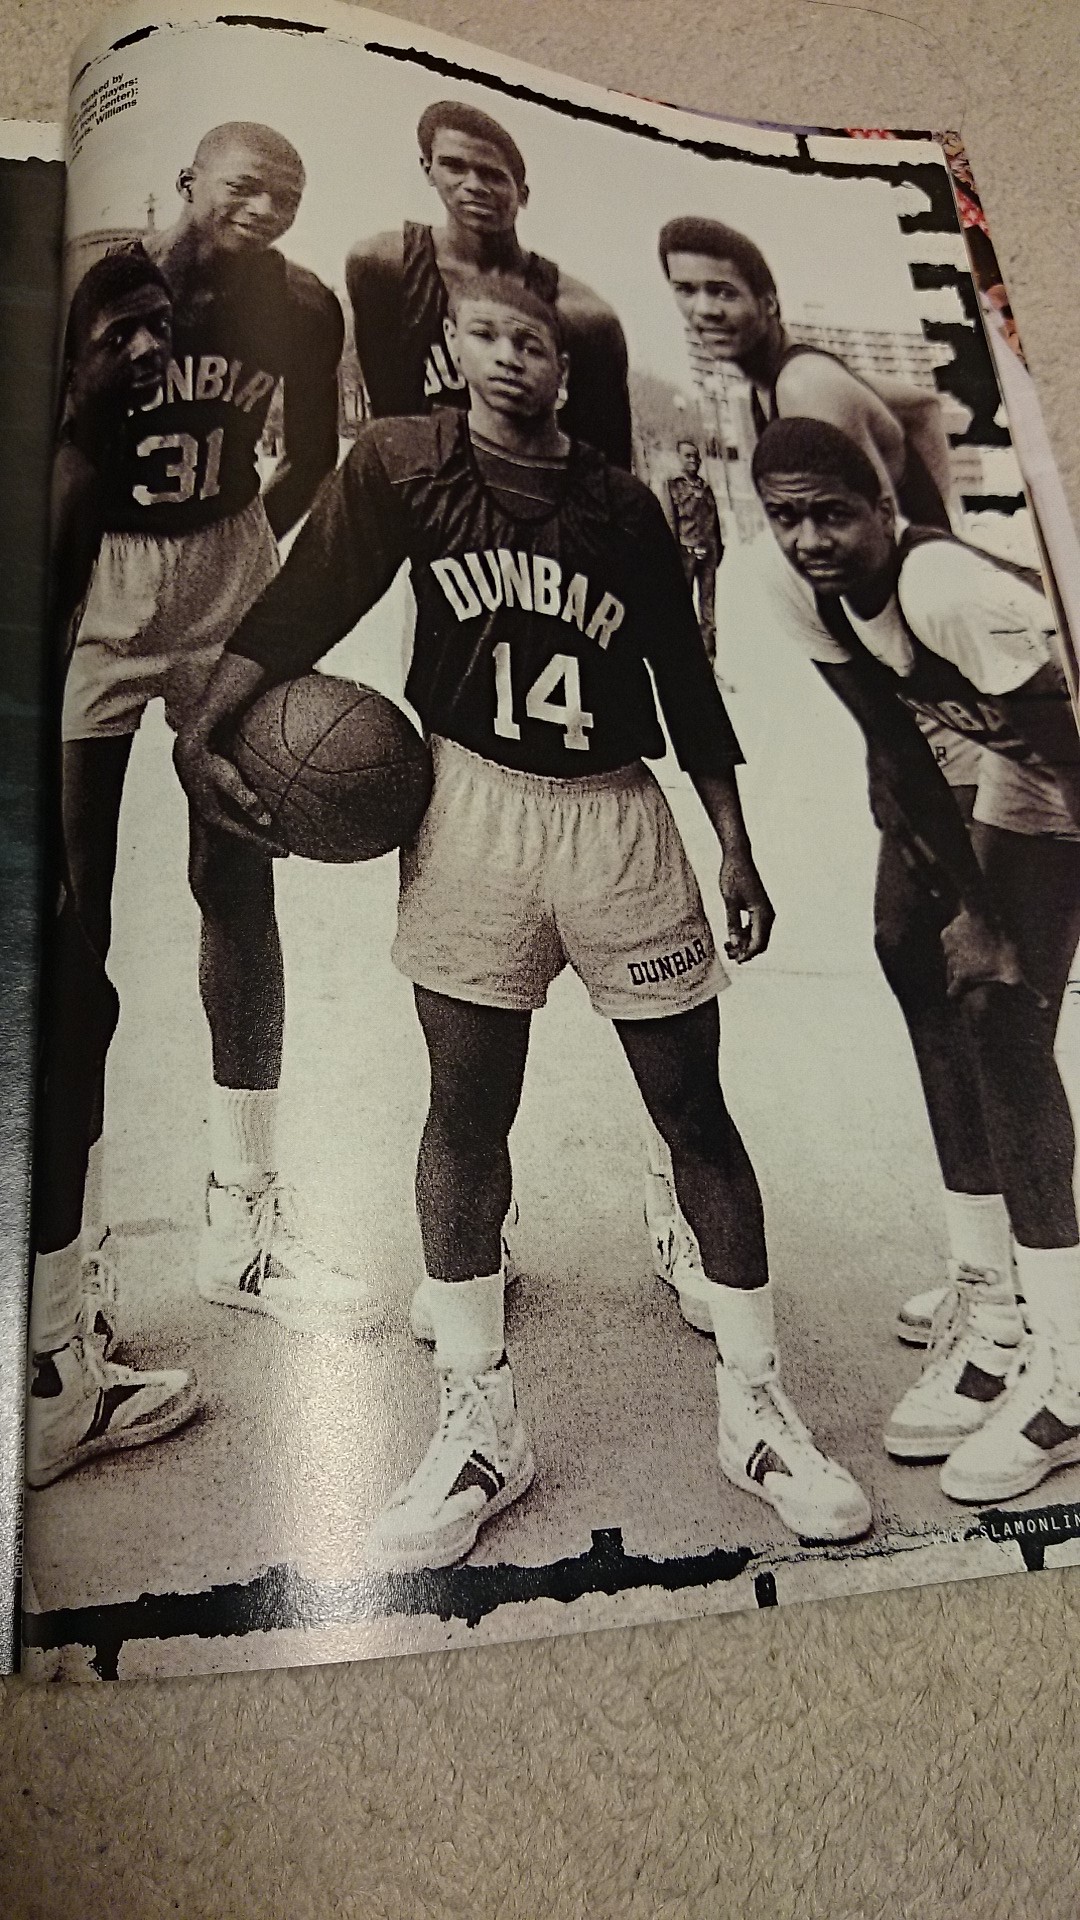 タイロン マグジー ボーグスと小さいバスケットボール選手 Journeyman ジャーニーマン